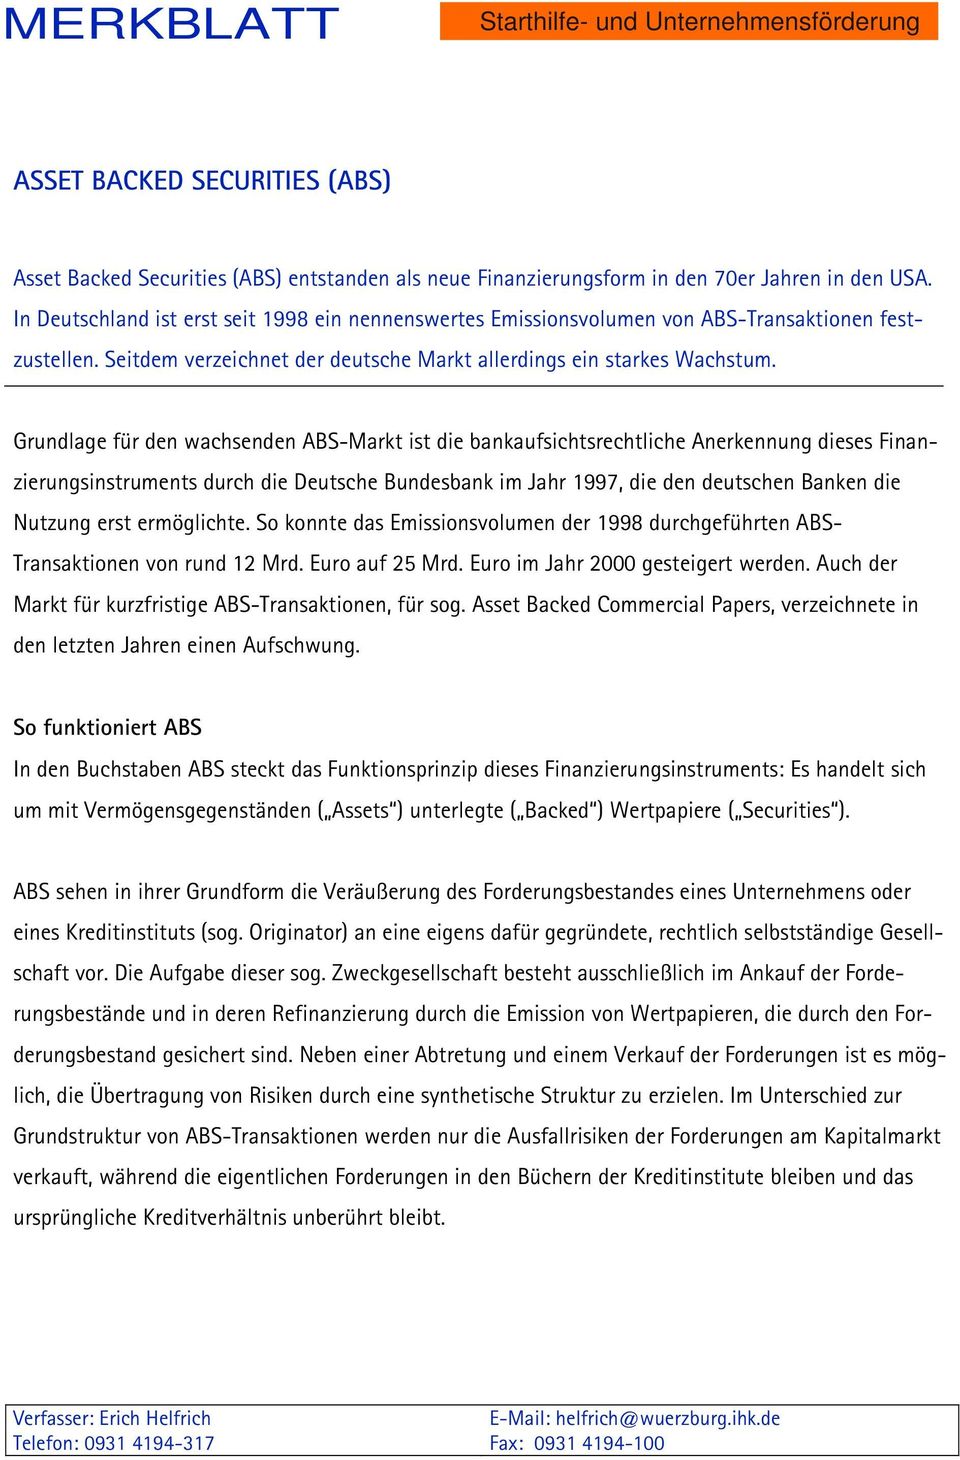 Grundlage für den wachsenden ABS-Markt ist die bankaufsichtsrechtliche Anerkennung dieses Finanzierungsinstruments durch die Deutsche Bundesbank im Jahr 1997, die den deutschen Banken die Nutzung